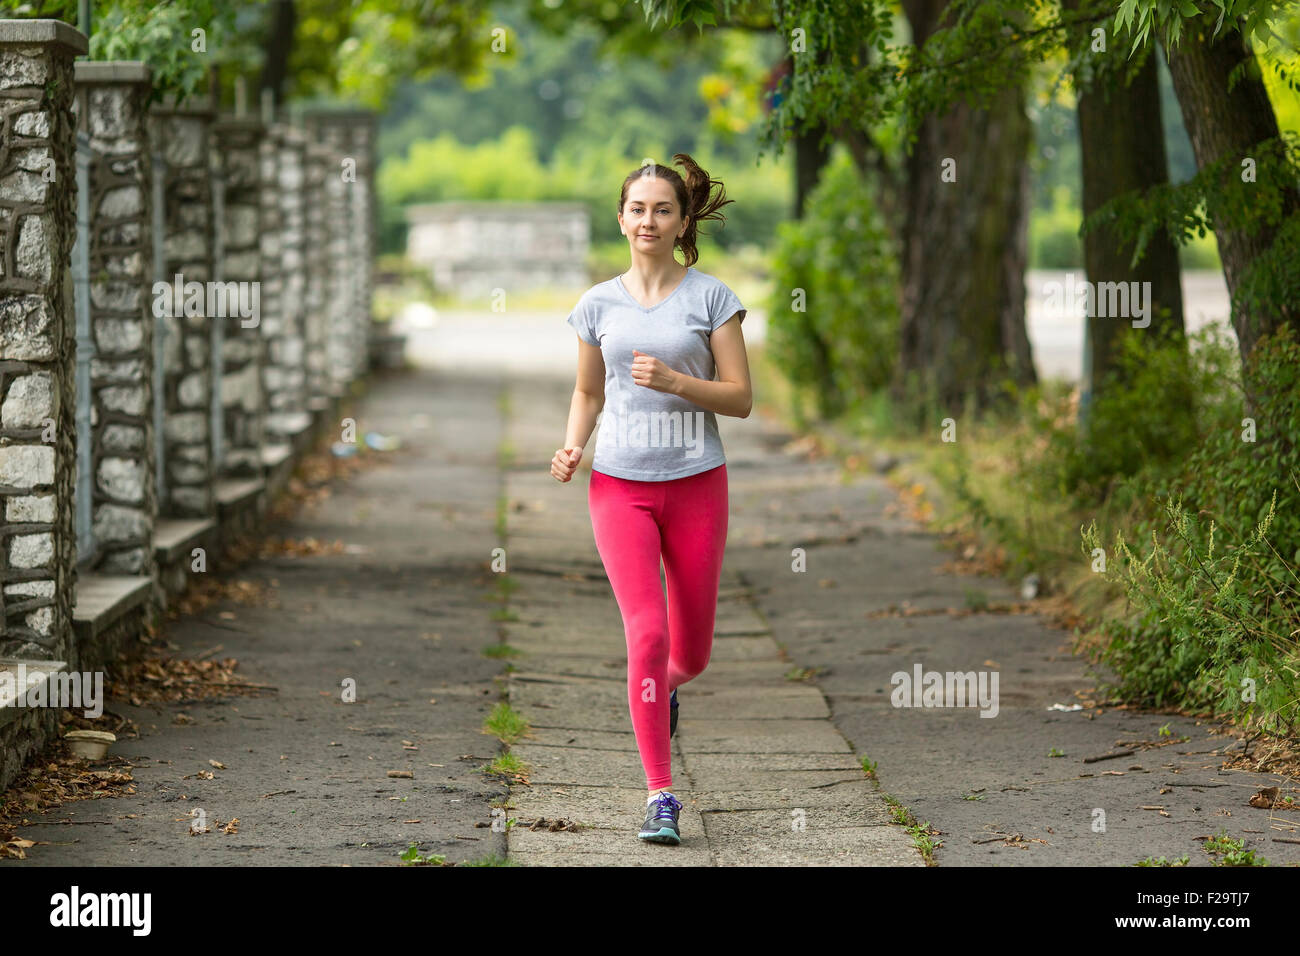 Ausgeführt. Junge Frau im Park joggen. Morgens joggen. Gesunde Lebensweise. Stockfoto